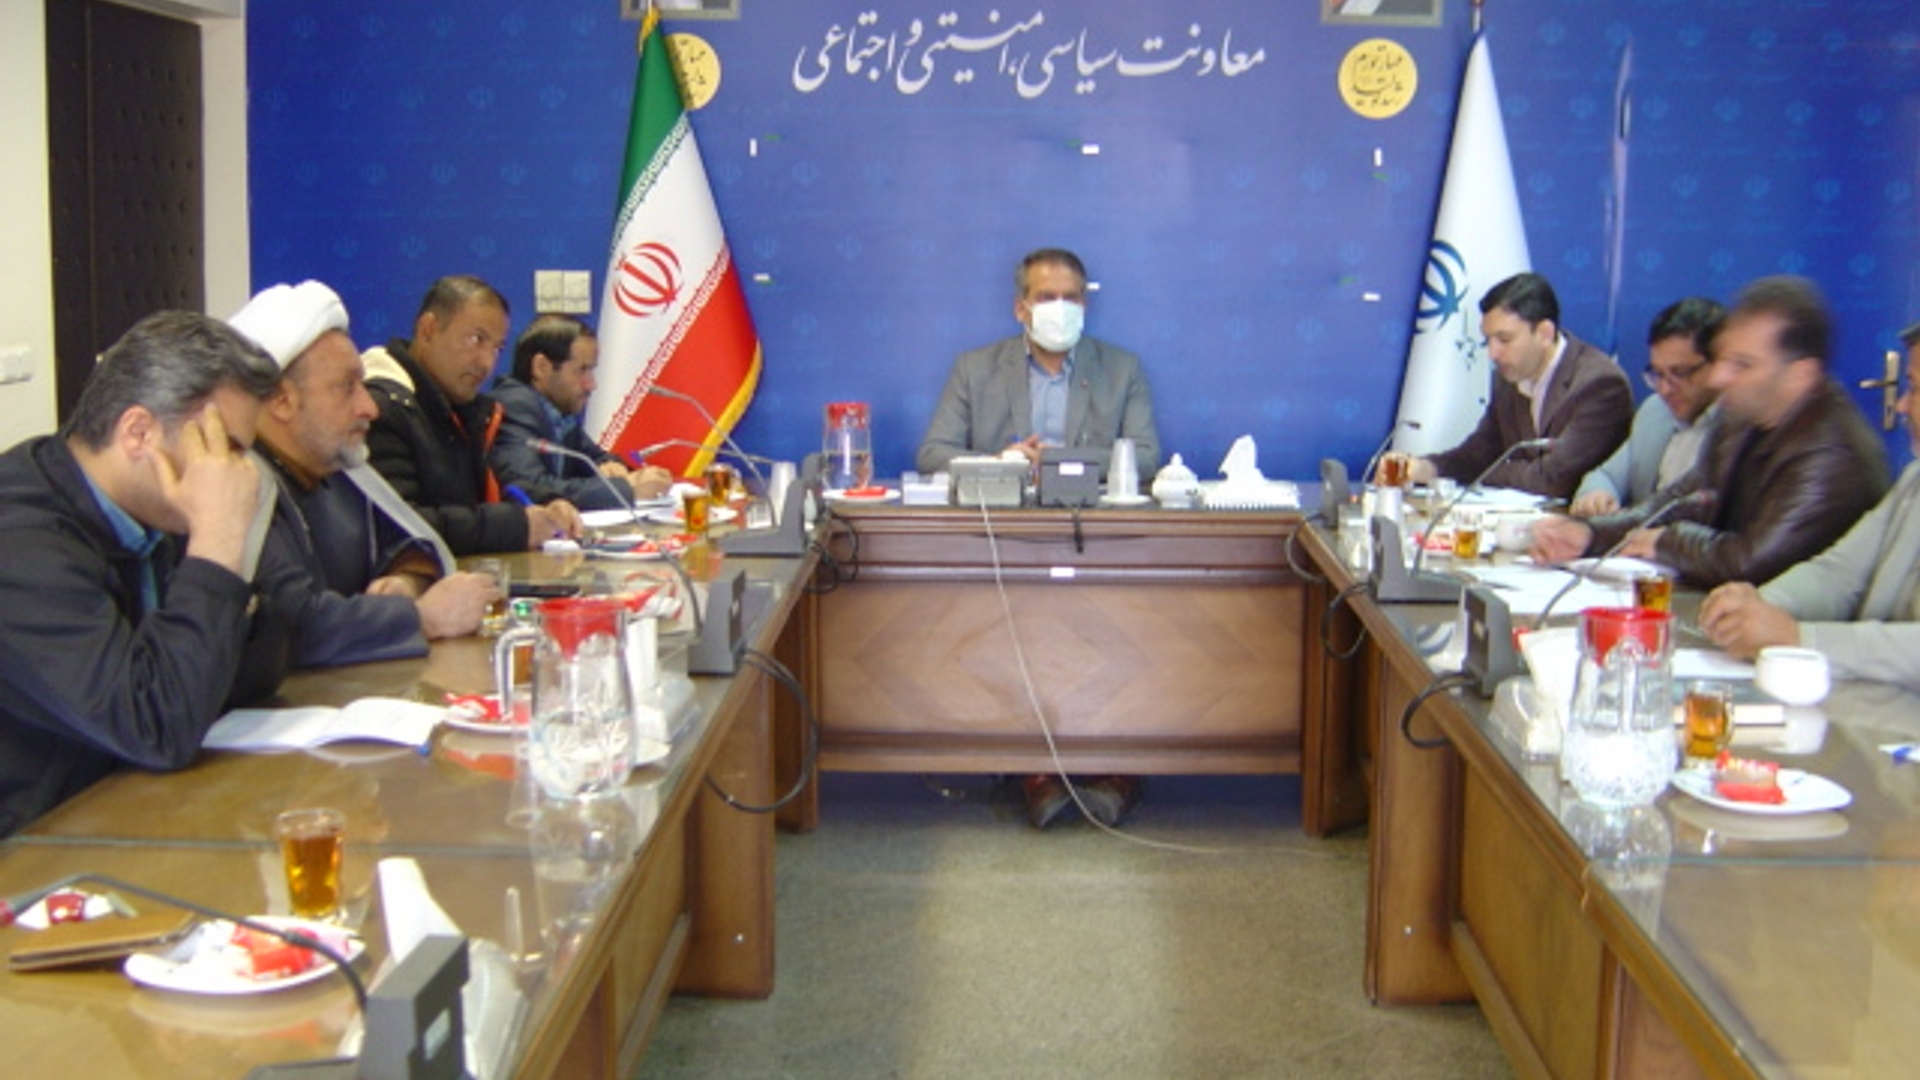 جلسه کمیسیون مشترک پیشگیری از کاربرد سلاح در درگیری ها،  اختلافات و مراسمات استان ساعت 8 صبح روز پنجشنبه مورخ 26-11-1402 به ریاست آقای رحیمی تبار مدیر کل امنیتی و انتظامی برگزار گردید.